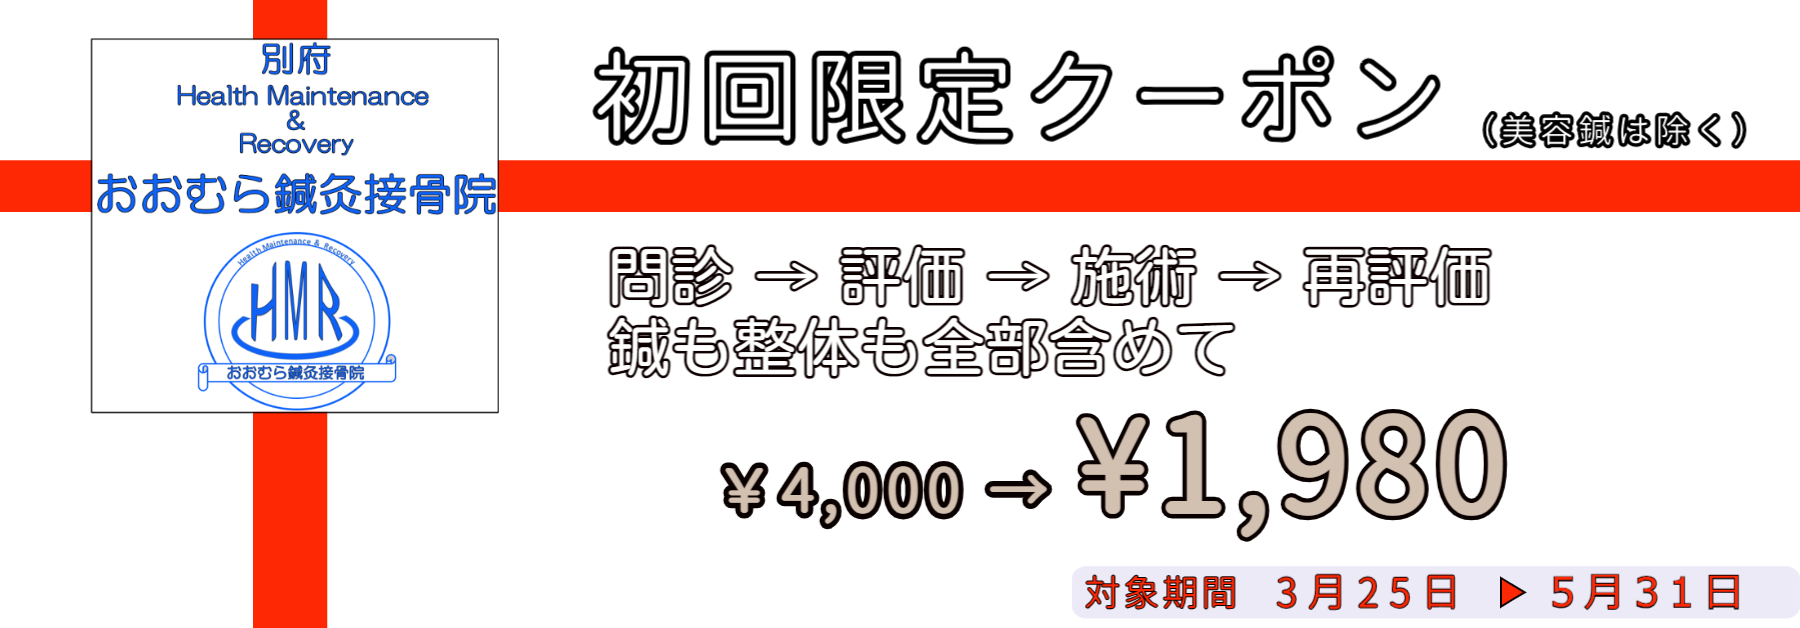 初回キャンペーン￥4,000 → ￥1,980